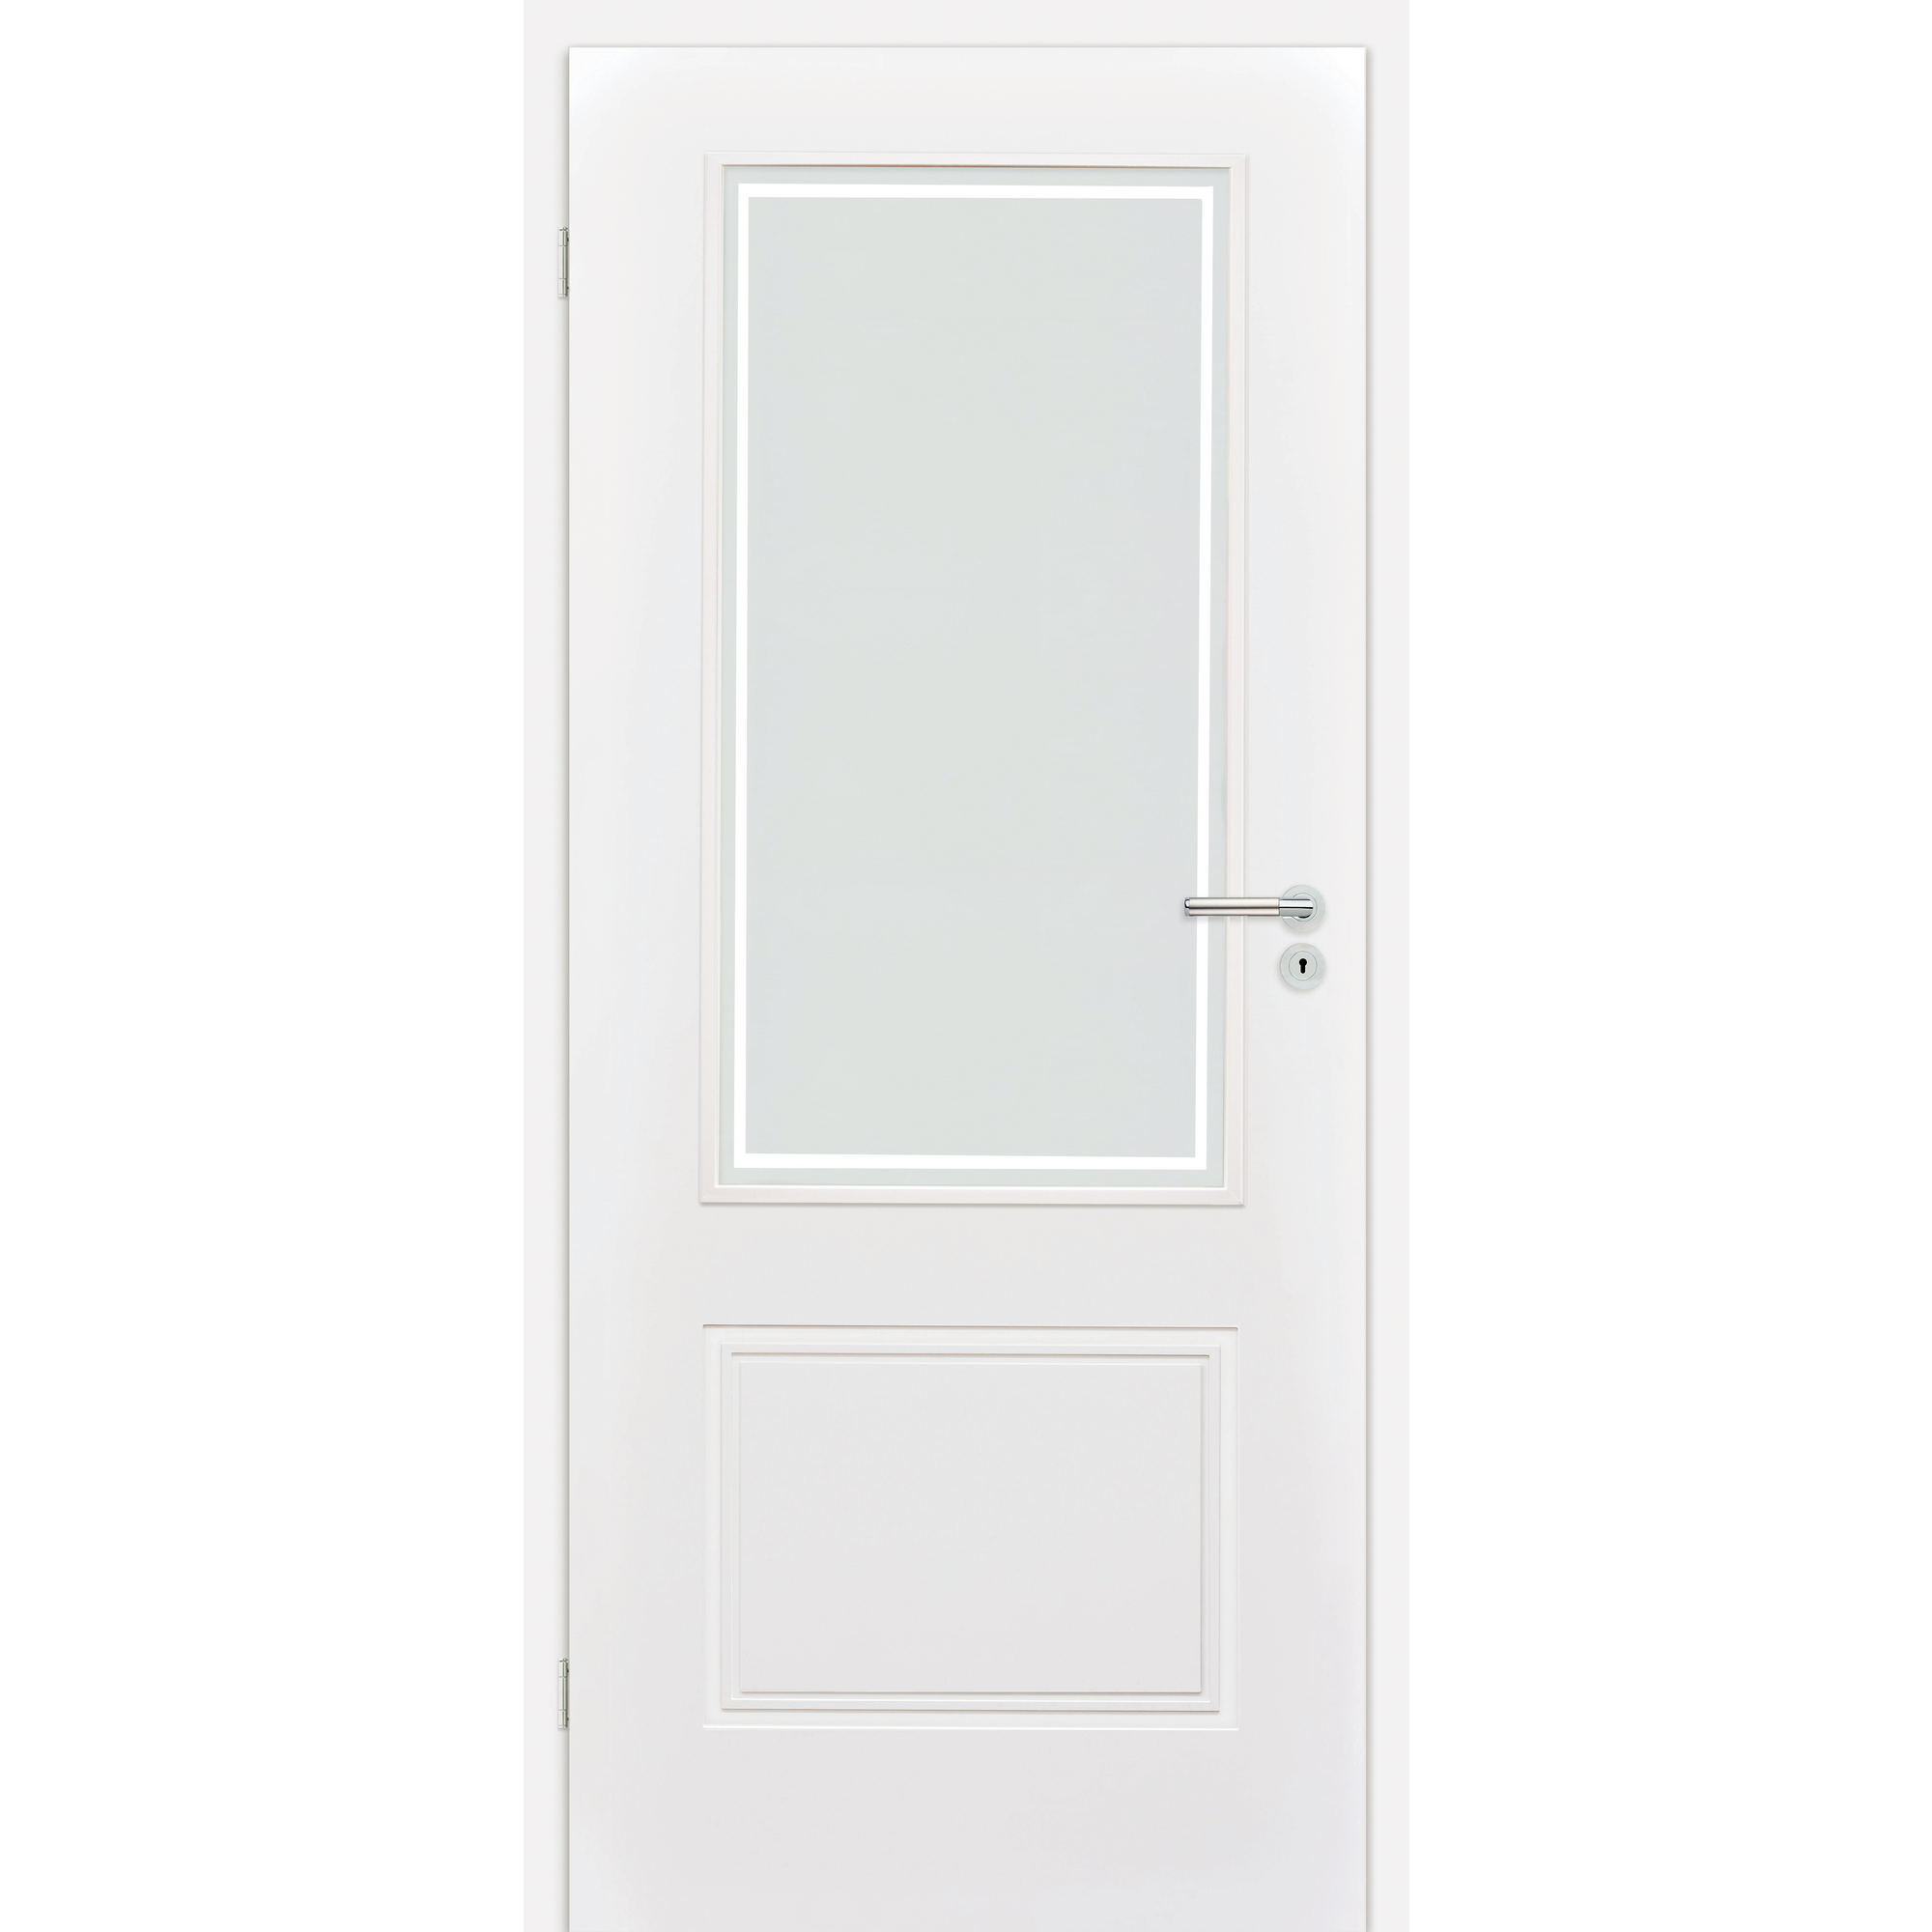 Innentür 'Linea 1.3 RS' mit Lichtausschnitt weiß 198,5 x 86 cm, Linksanschlag + product picture